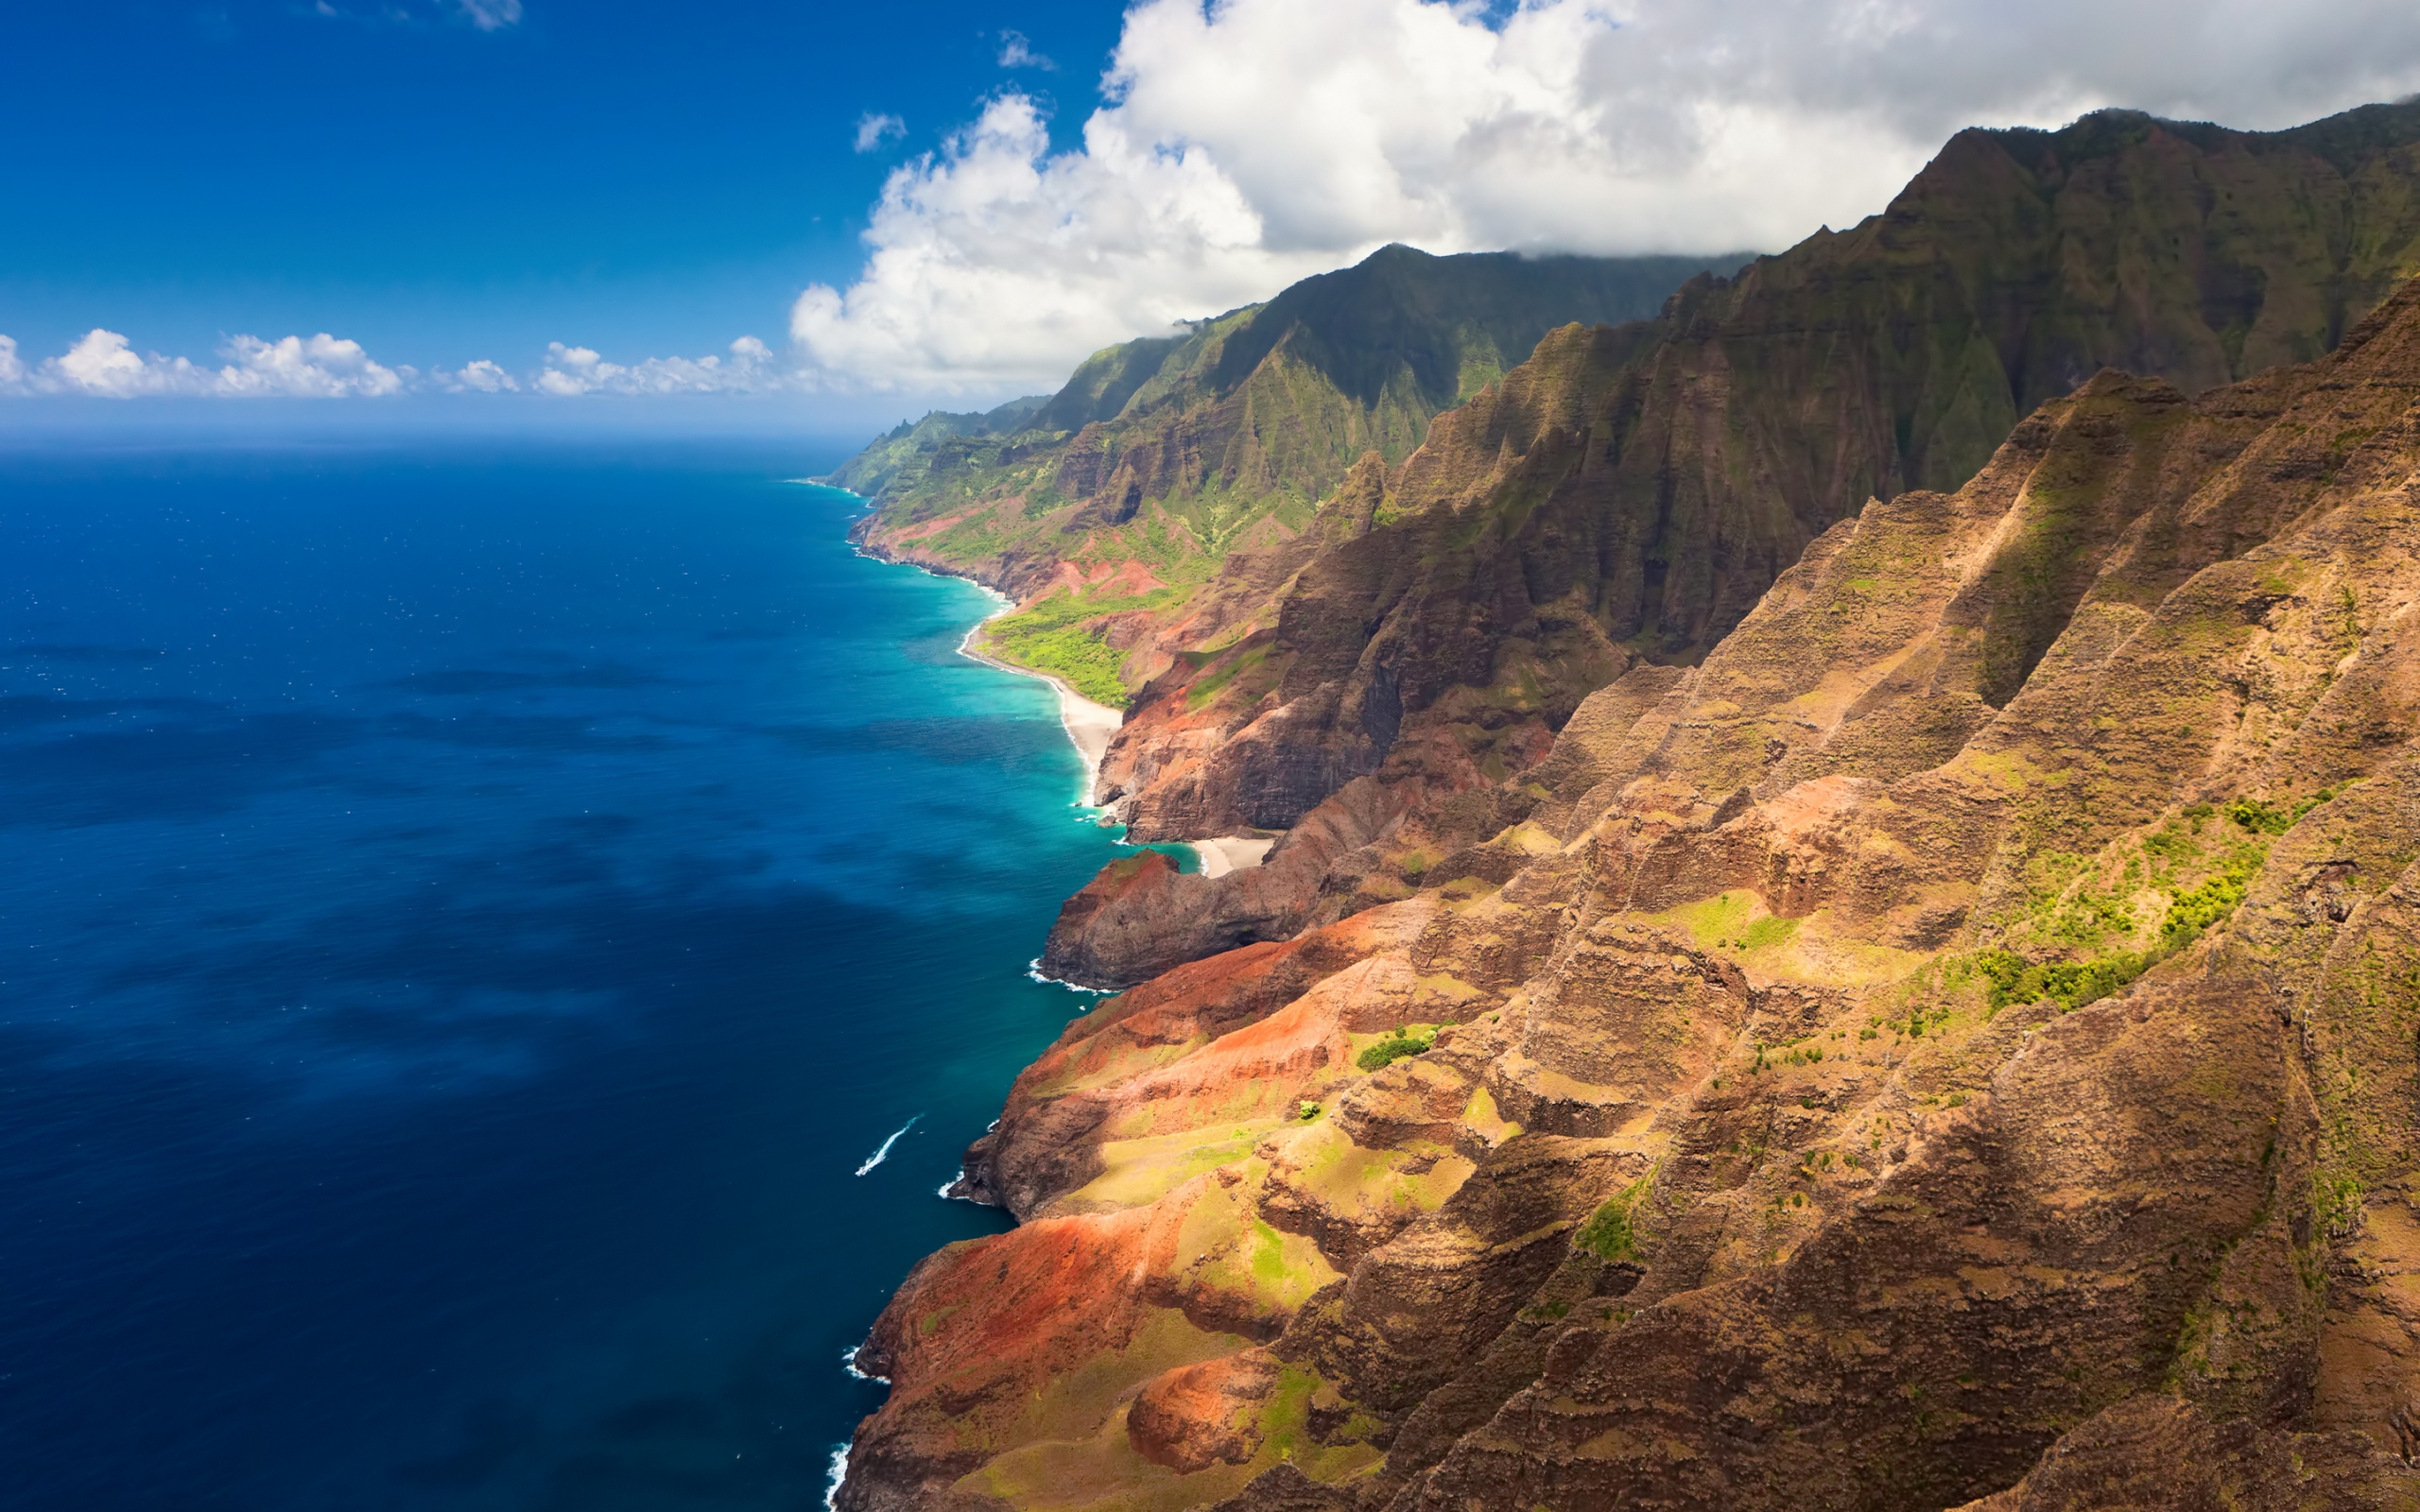 Hawaii Beach for 2560 x 1600 widescreen resolution